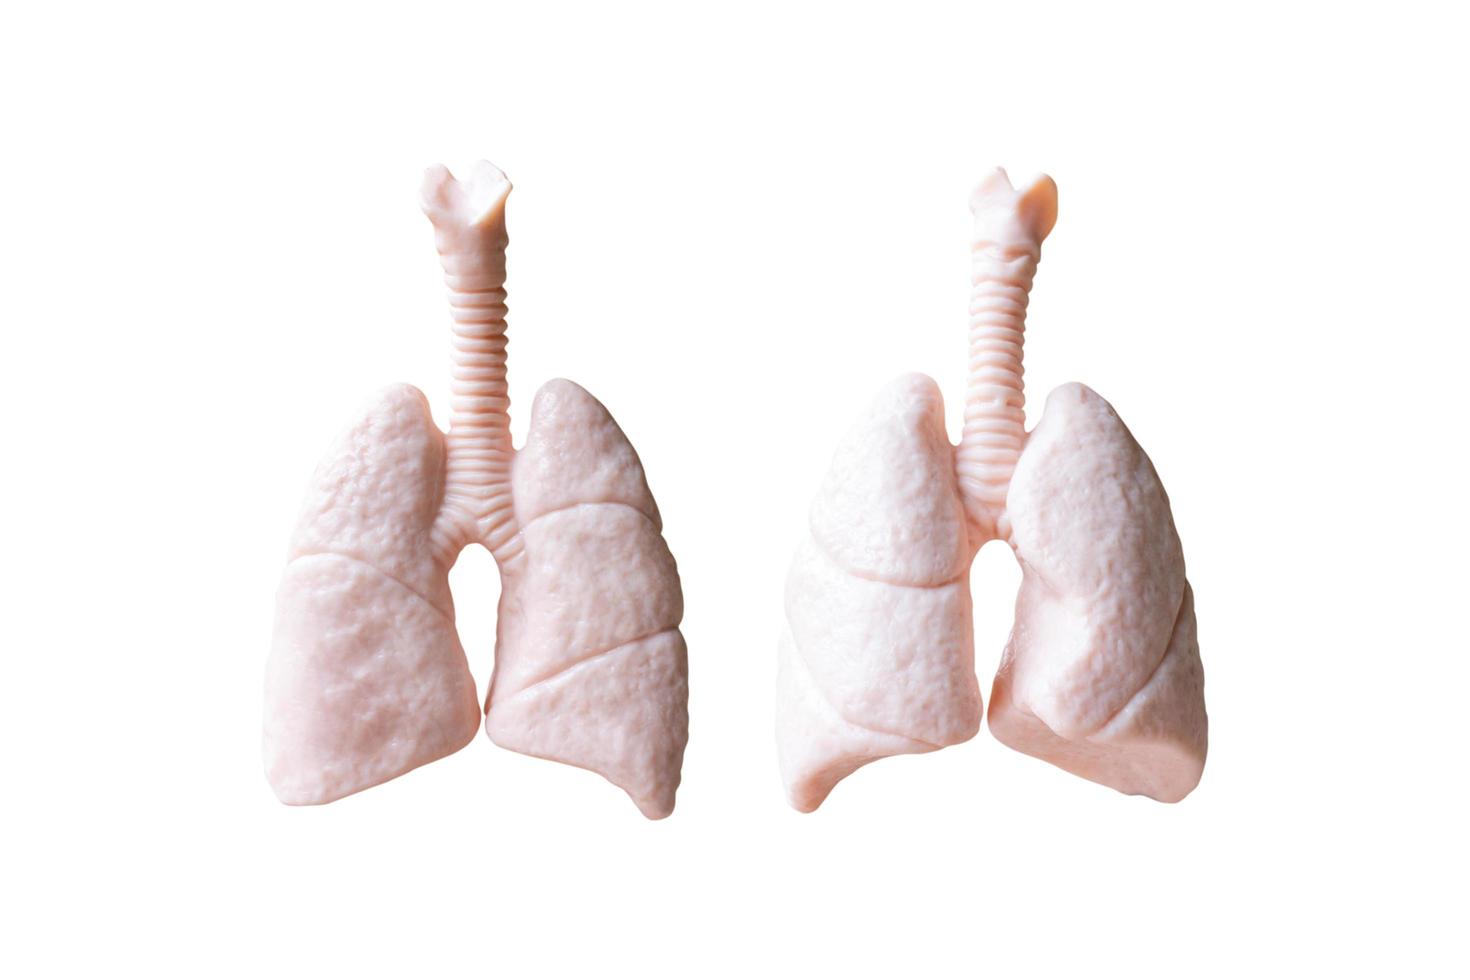 modelo anatômico de pulmão humano isolado em um fundo branco foto